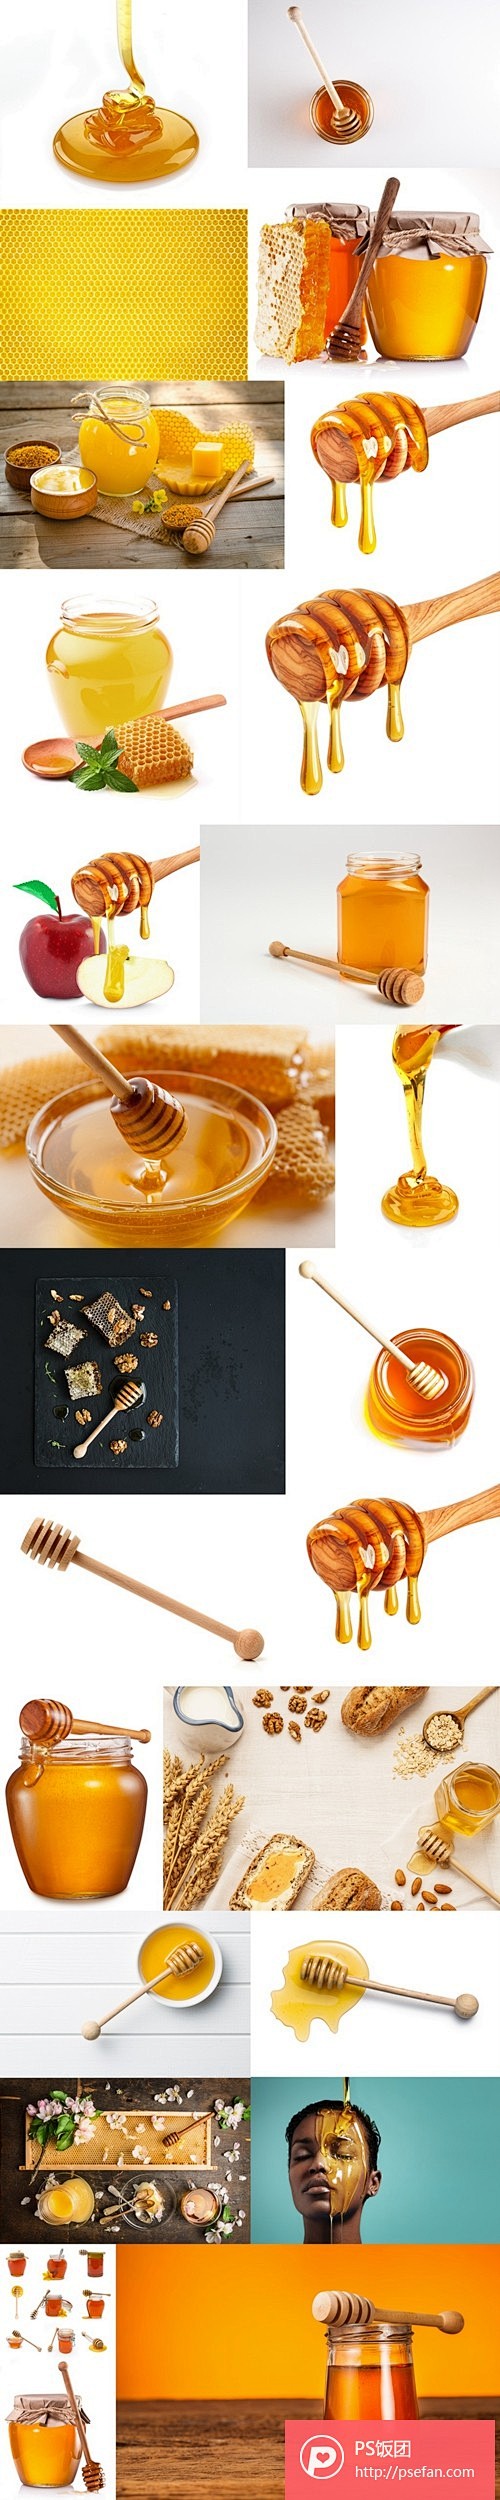 蜂蜜高清图片组   - PS饭团网